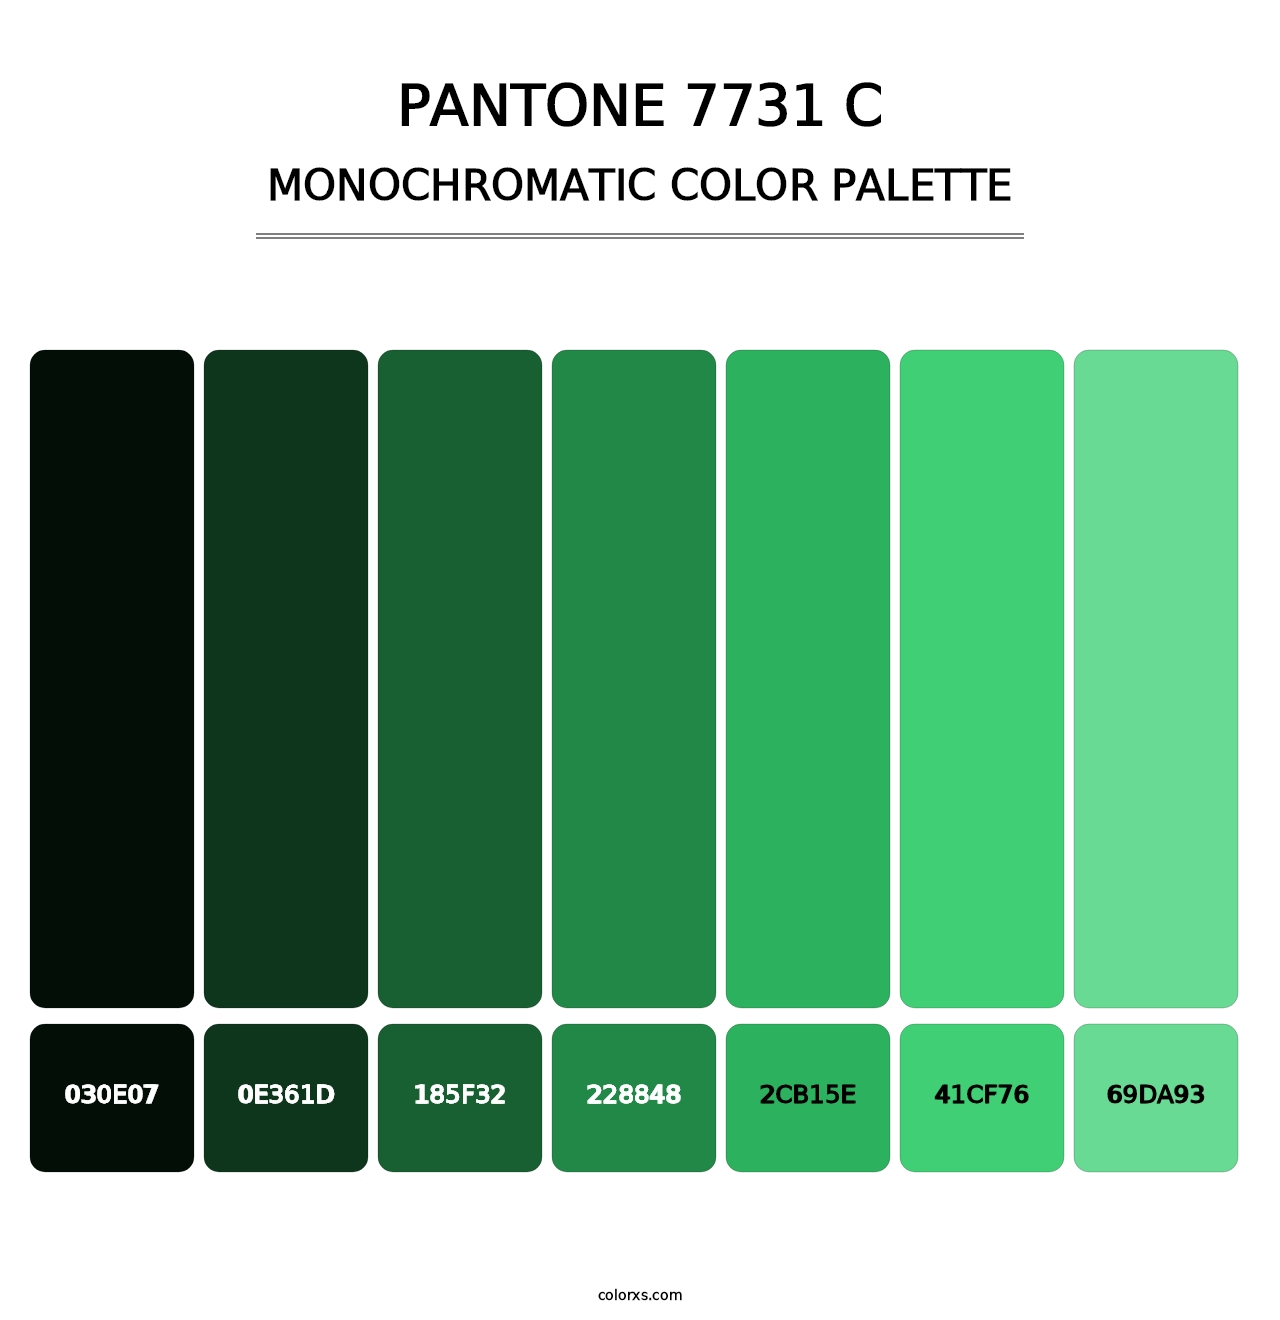 PANTONE 7731 C - Monochromatic Color Palette